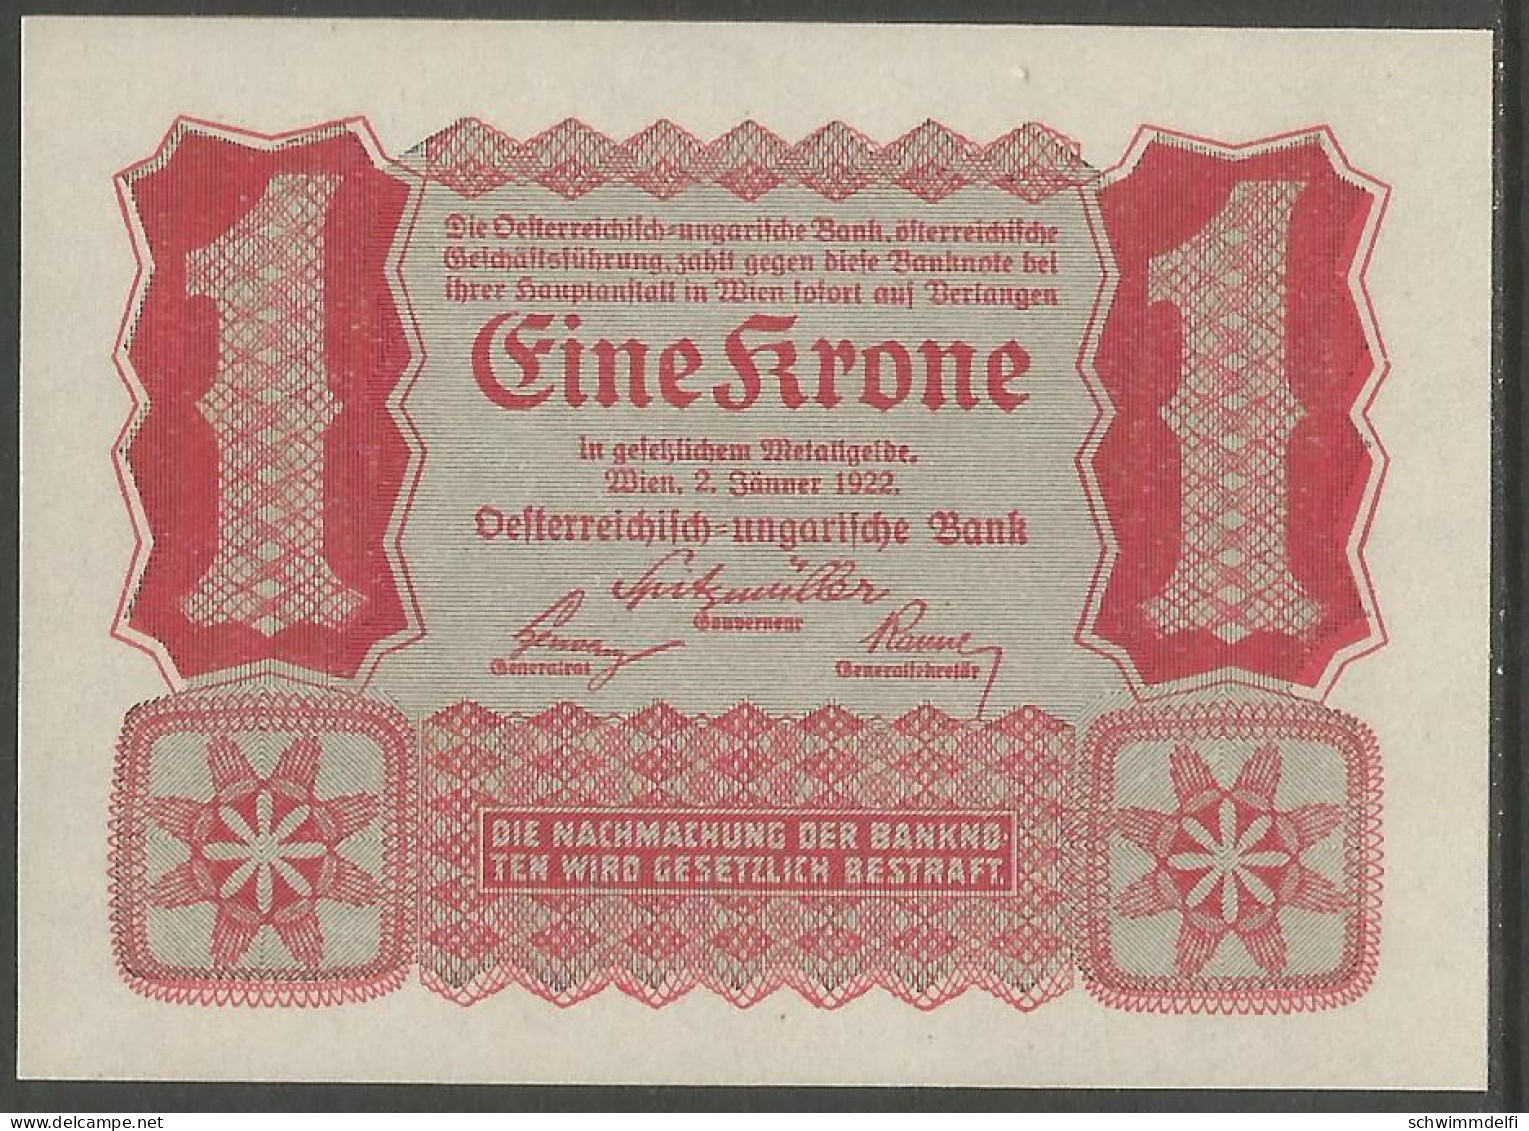 OESTERREICH - AUSTRIA - 1 CORONA 1922 - BILLETE DEL BANCO AUSTRIA - HUNGRÍA - VIENNA , 02. JAENNER 1922 - SIN CIRCULAR - Oostenrijk